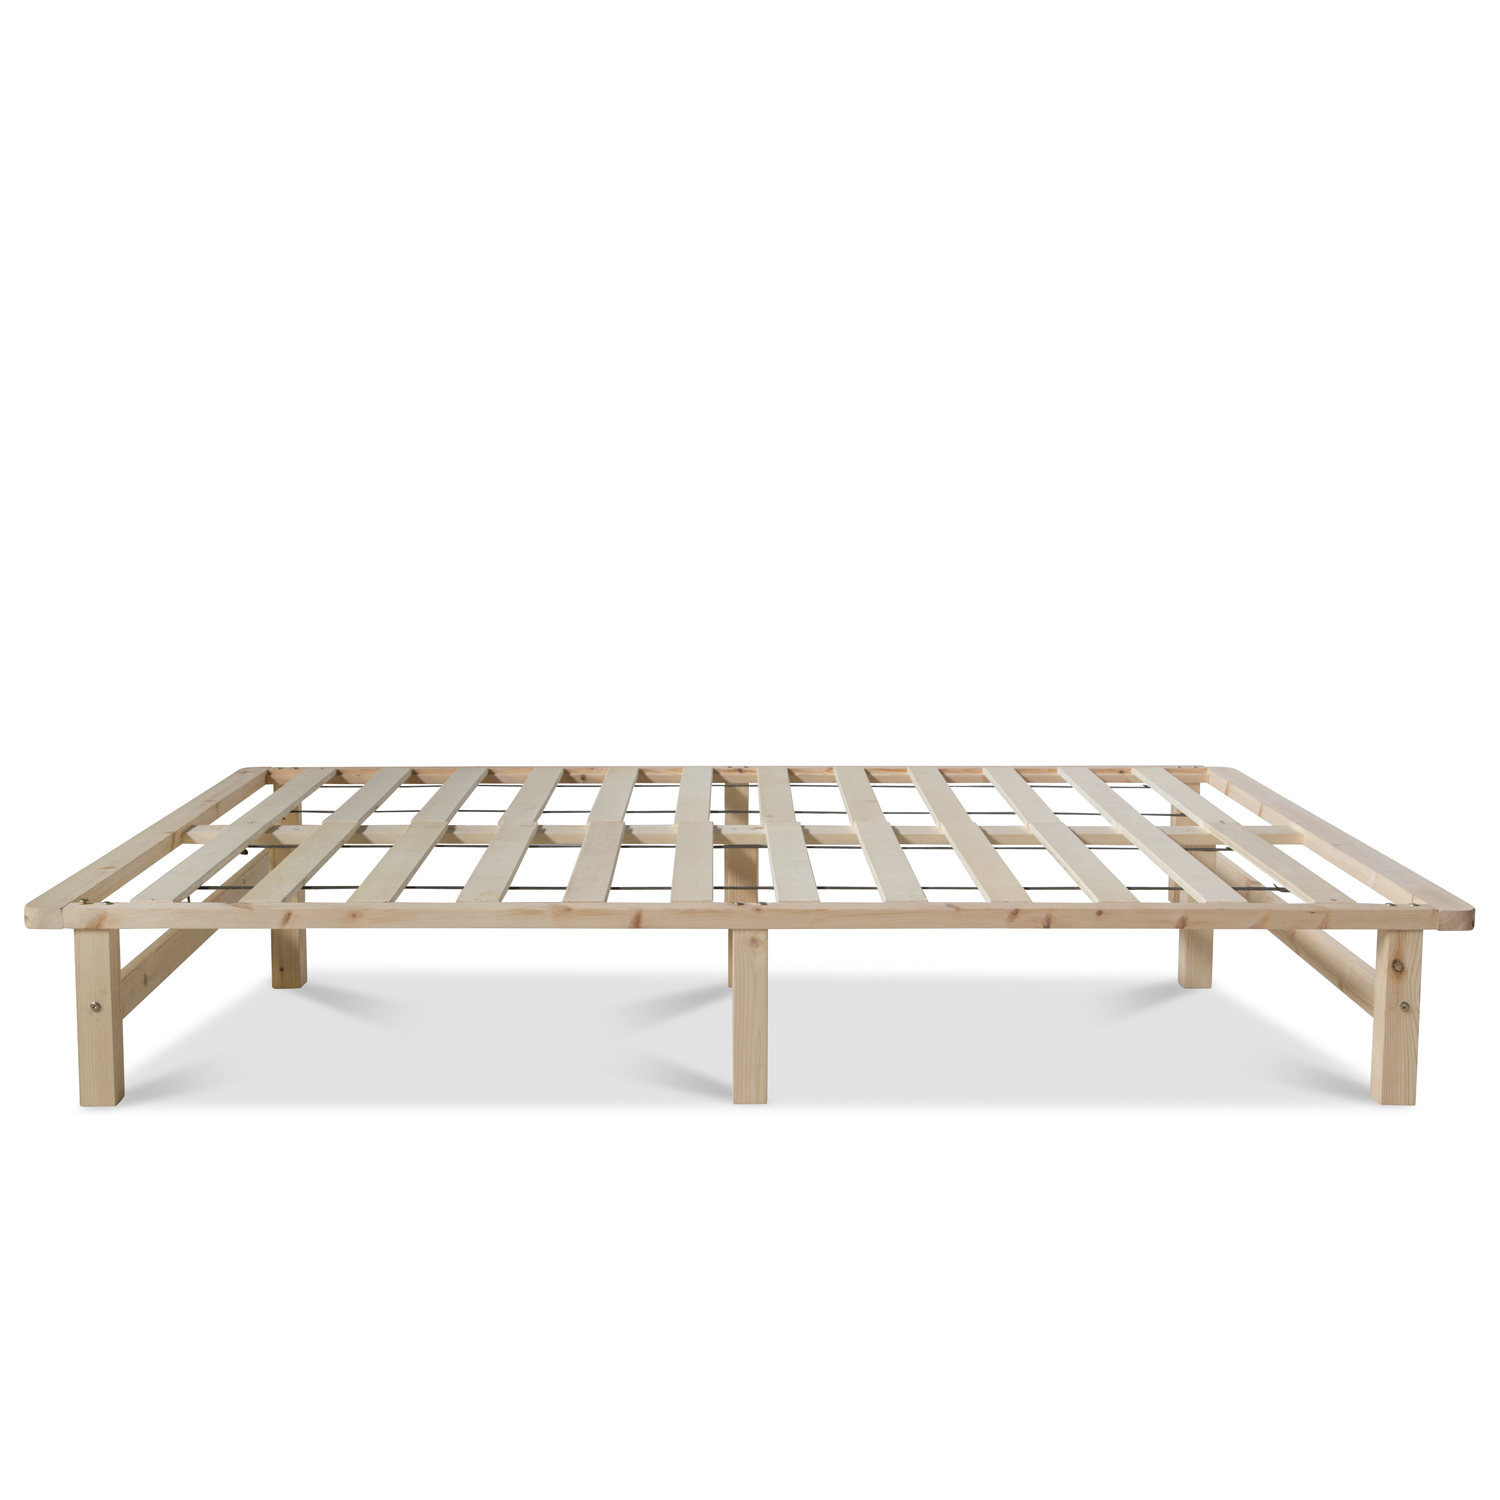 Pallet Bed Frame 140x200 cm Solid Wooden Bed Pallet Furniture Futon Bed